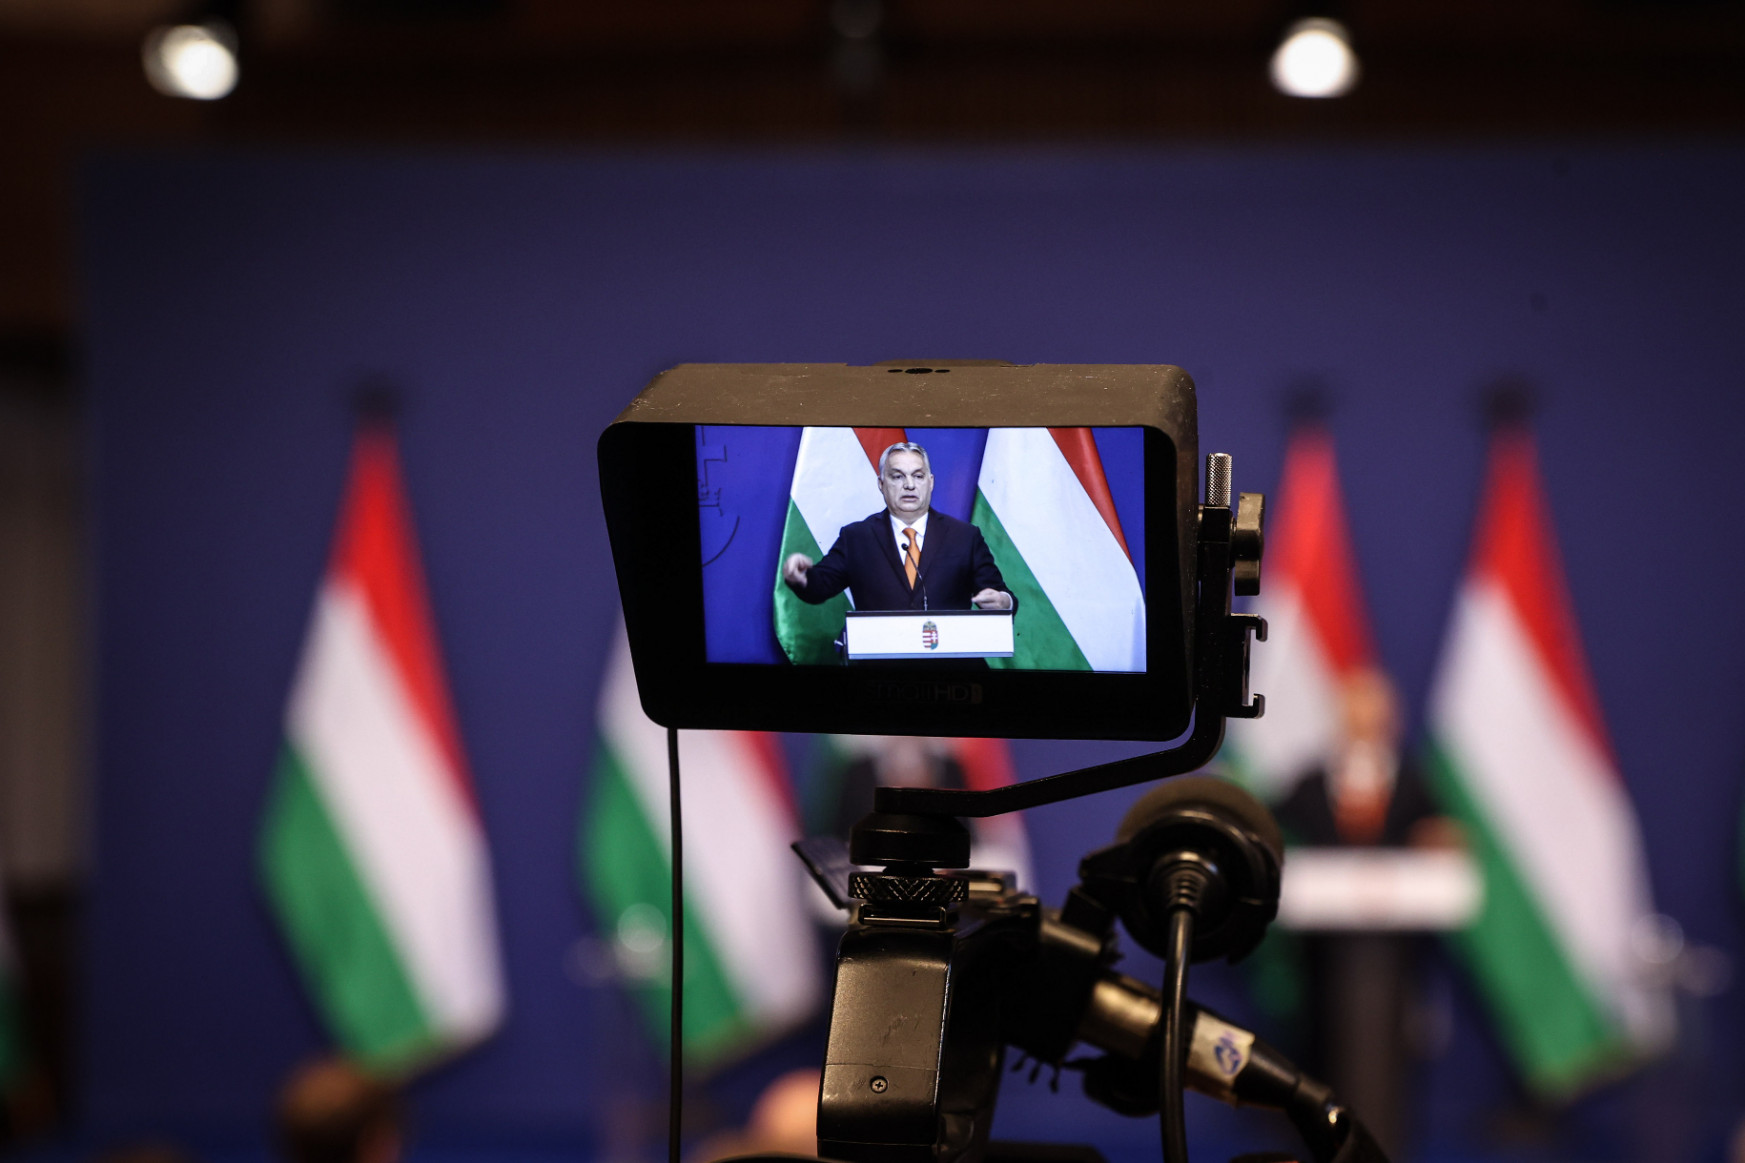 Novák Katalin államfőjelöltsége volt Orbán kormányinfójának szenzációja